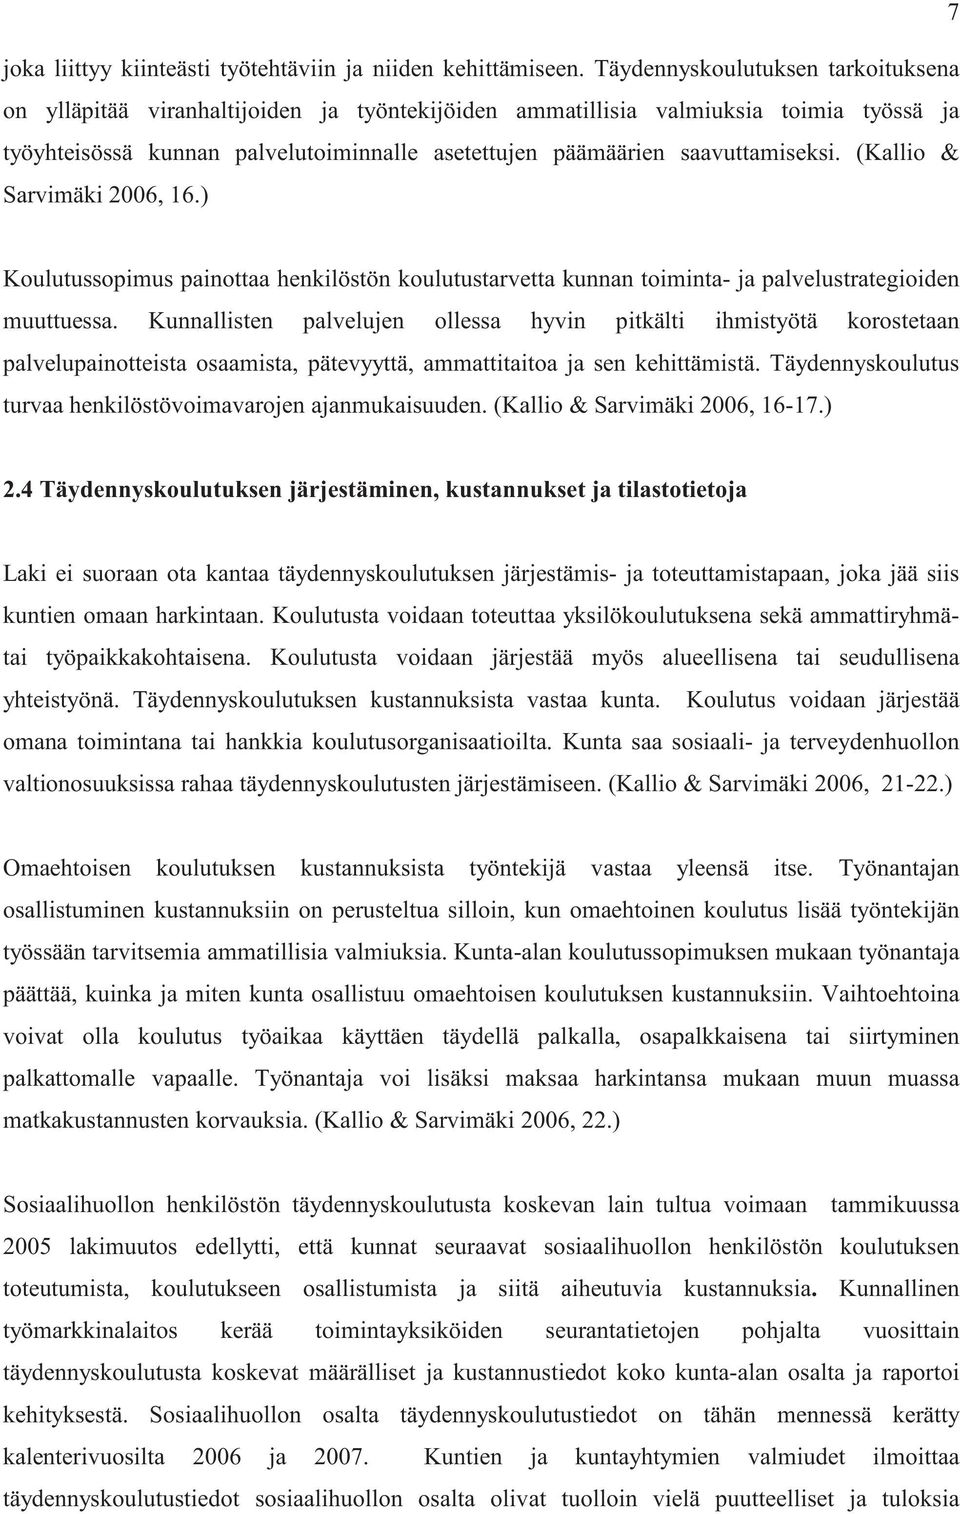 saavuttamiseksi. (Kallio & Sarvimäki 2006, 16.) Koulutussopimus painottaa henkilöstön koulutustarvetta kunnan toiminta- ja palvelustrategioiden muuttuessa.